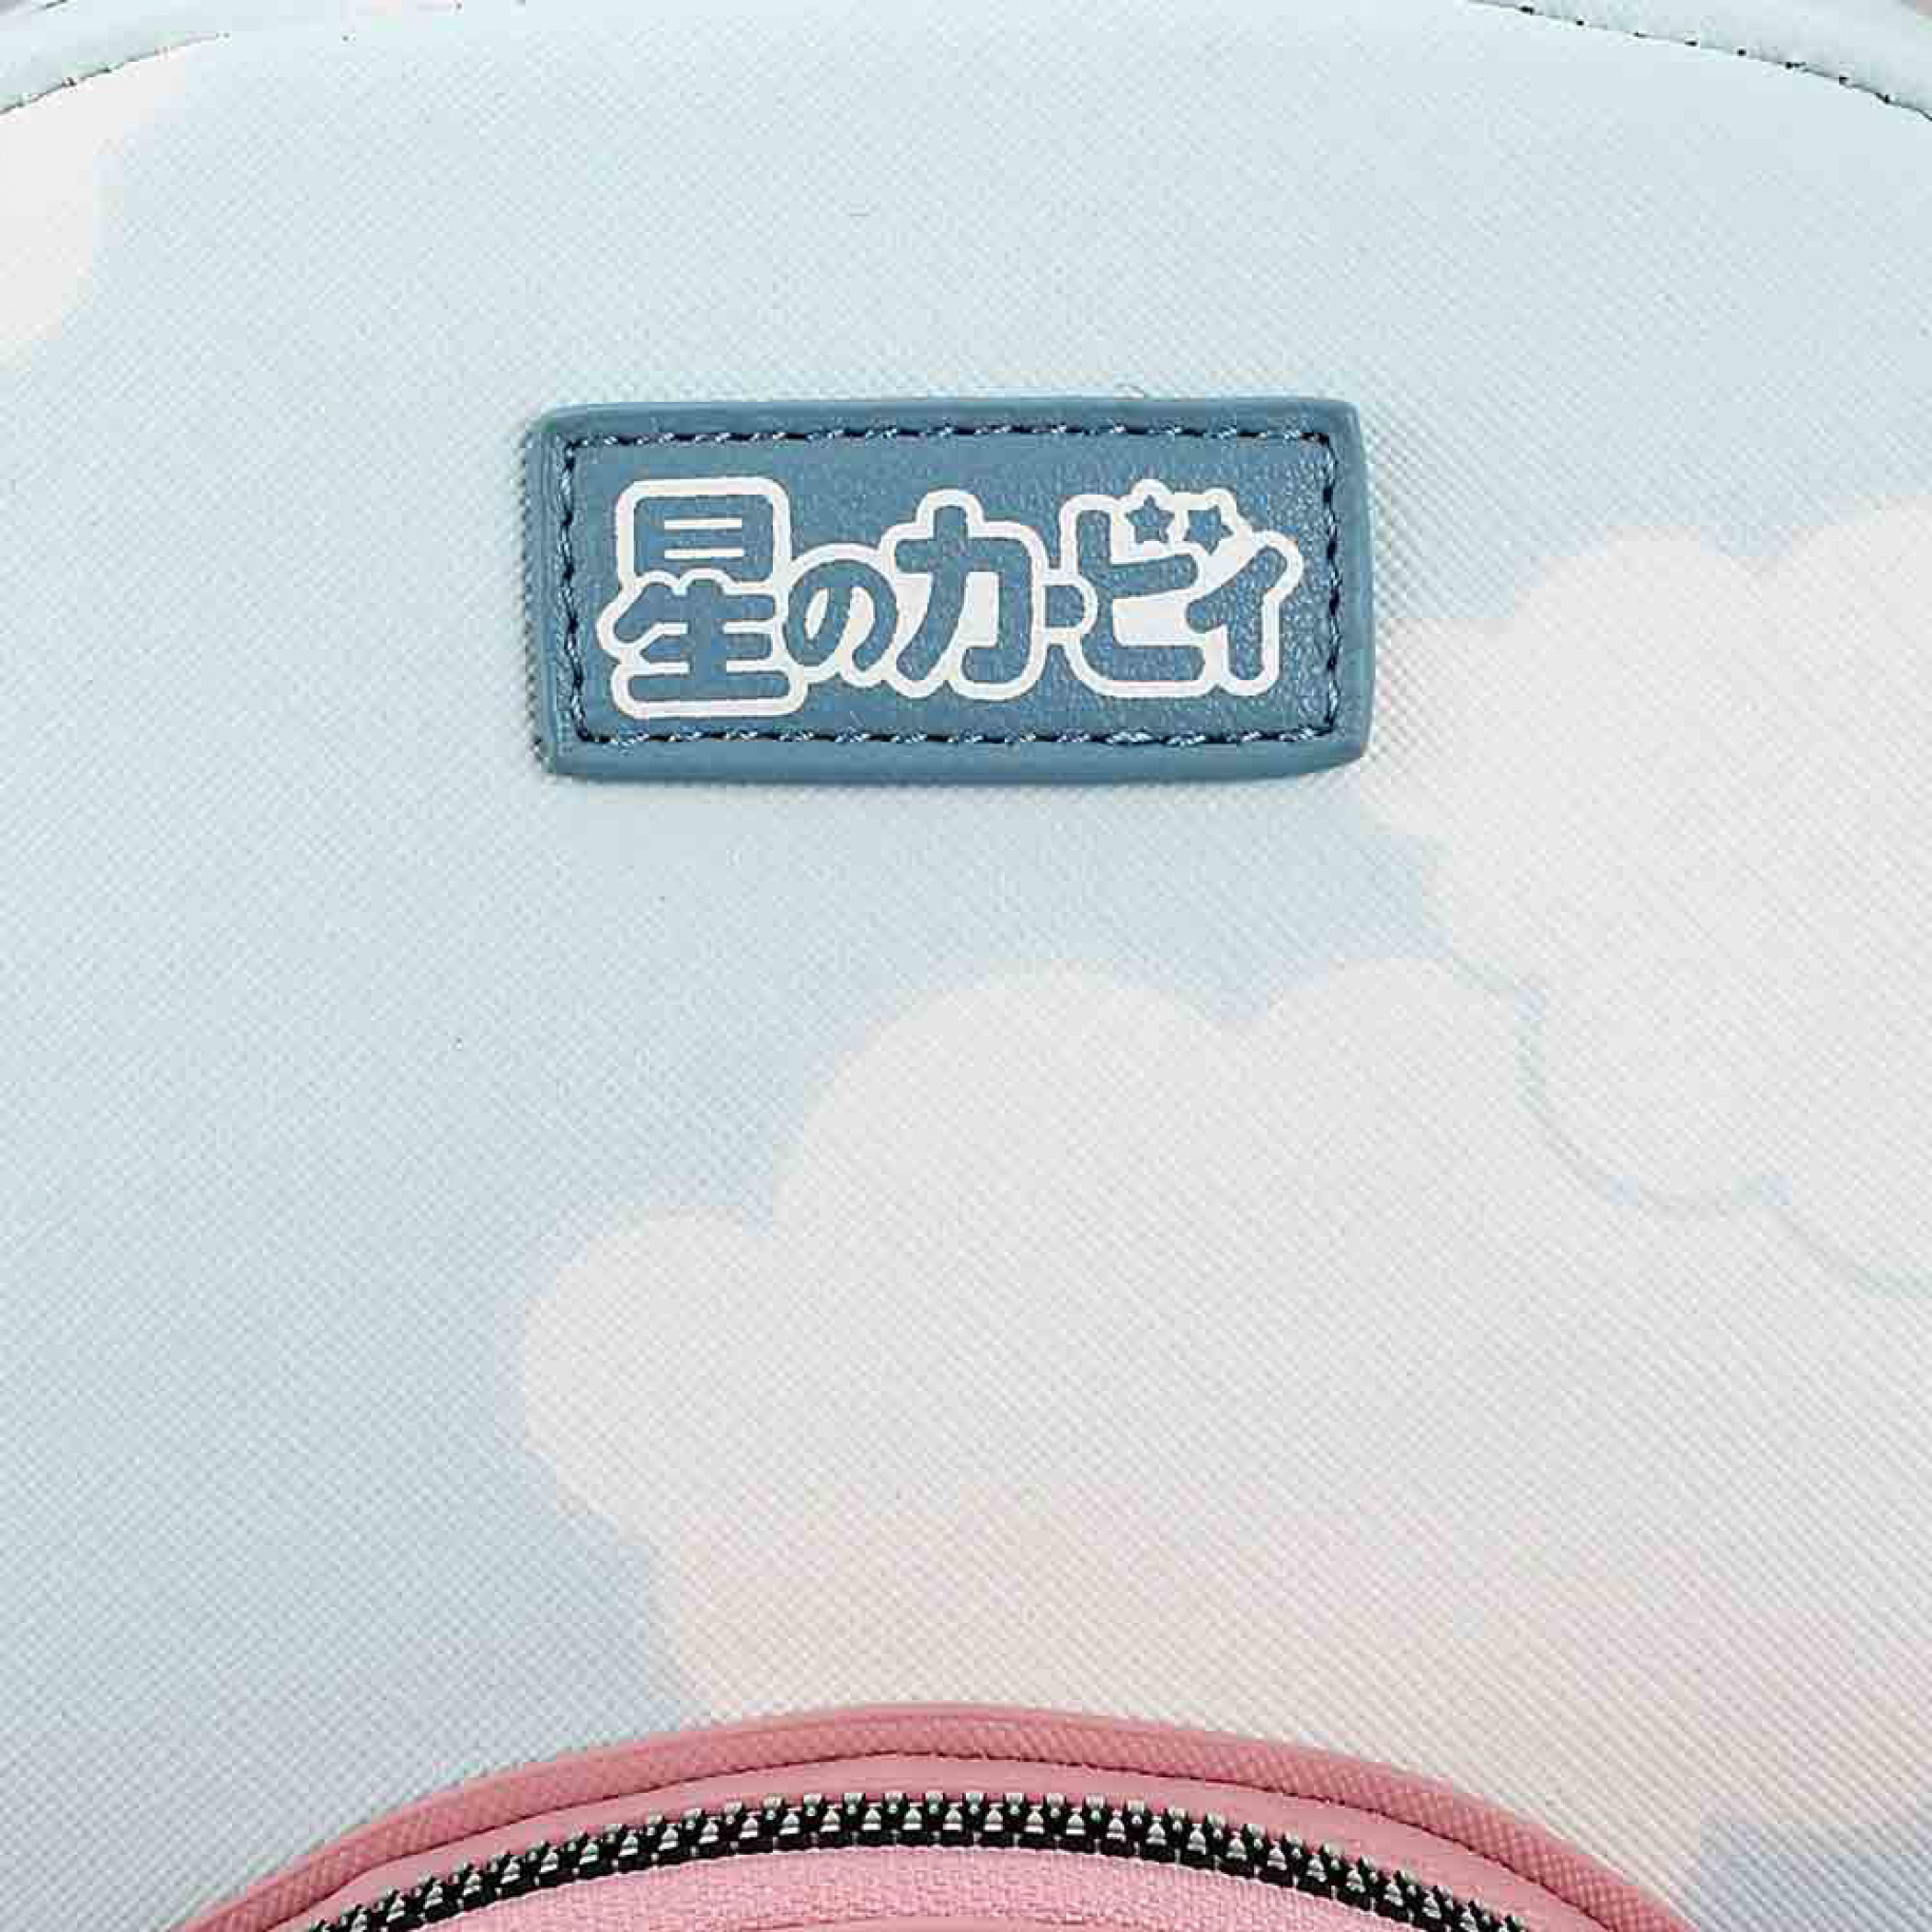 Nintendo Kirby Die Cut Pocket & Cloud Print Mini Backpack